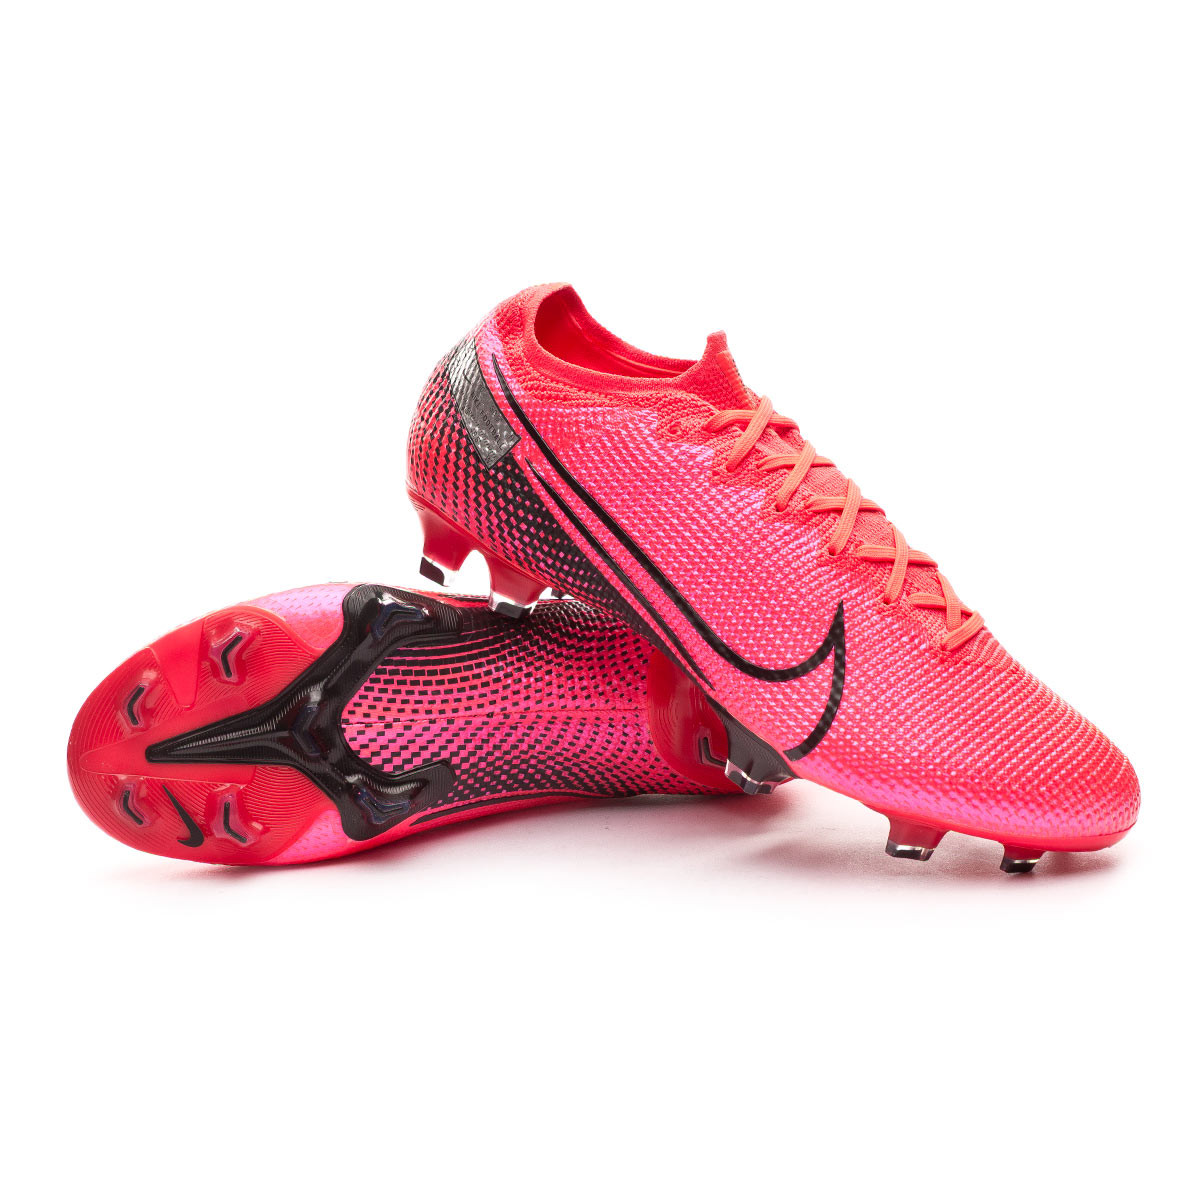 Zapatos de fútbol Nike Mercurial Vapor XIII Elite FG Laser crimson-Black -  Tienda de fútbol Fútbol Emotion